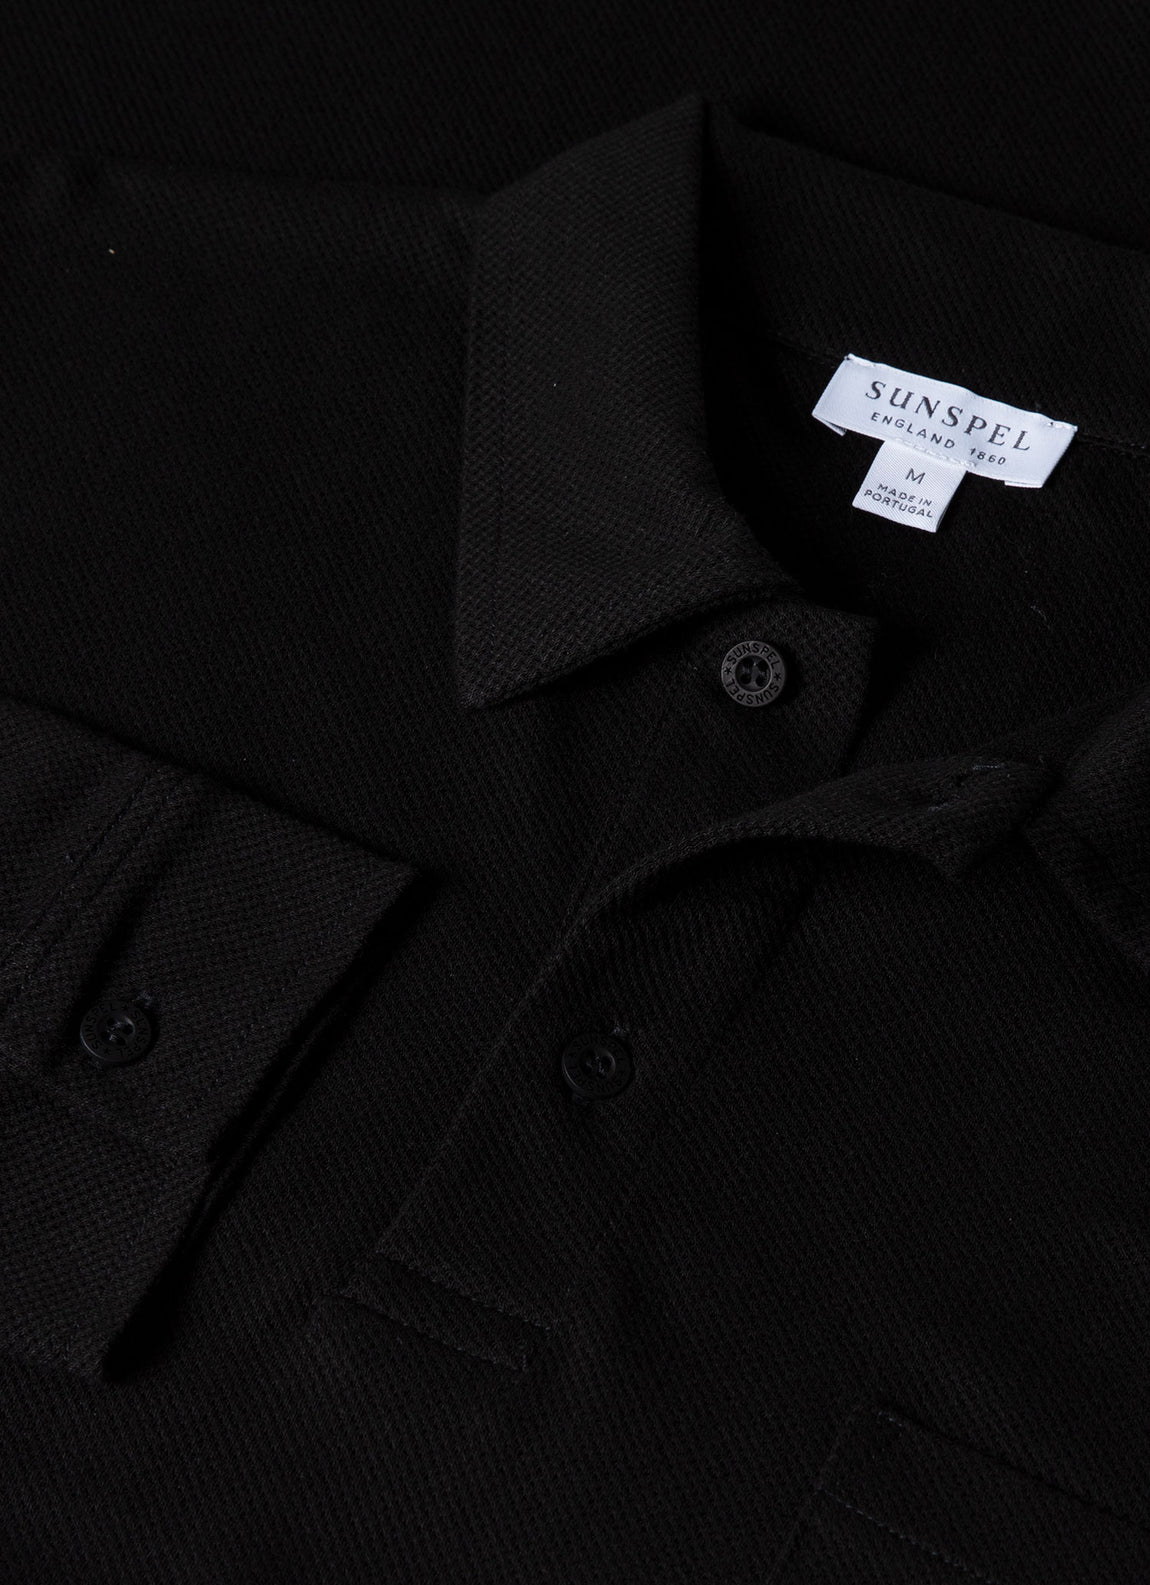 Men's Long Sleeve Riviera Polo Shirt in Black | Sunspel